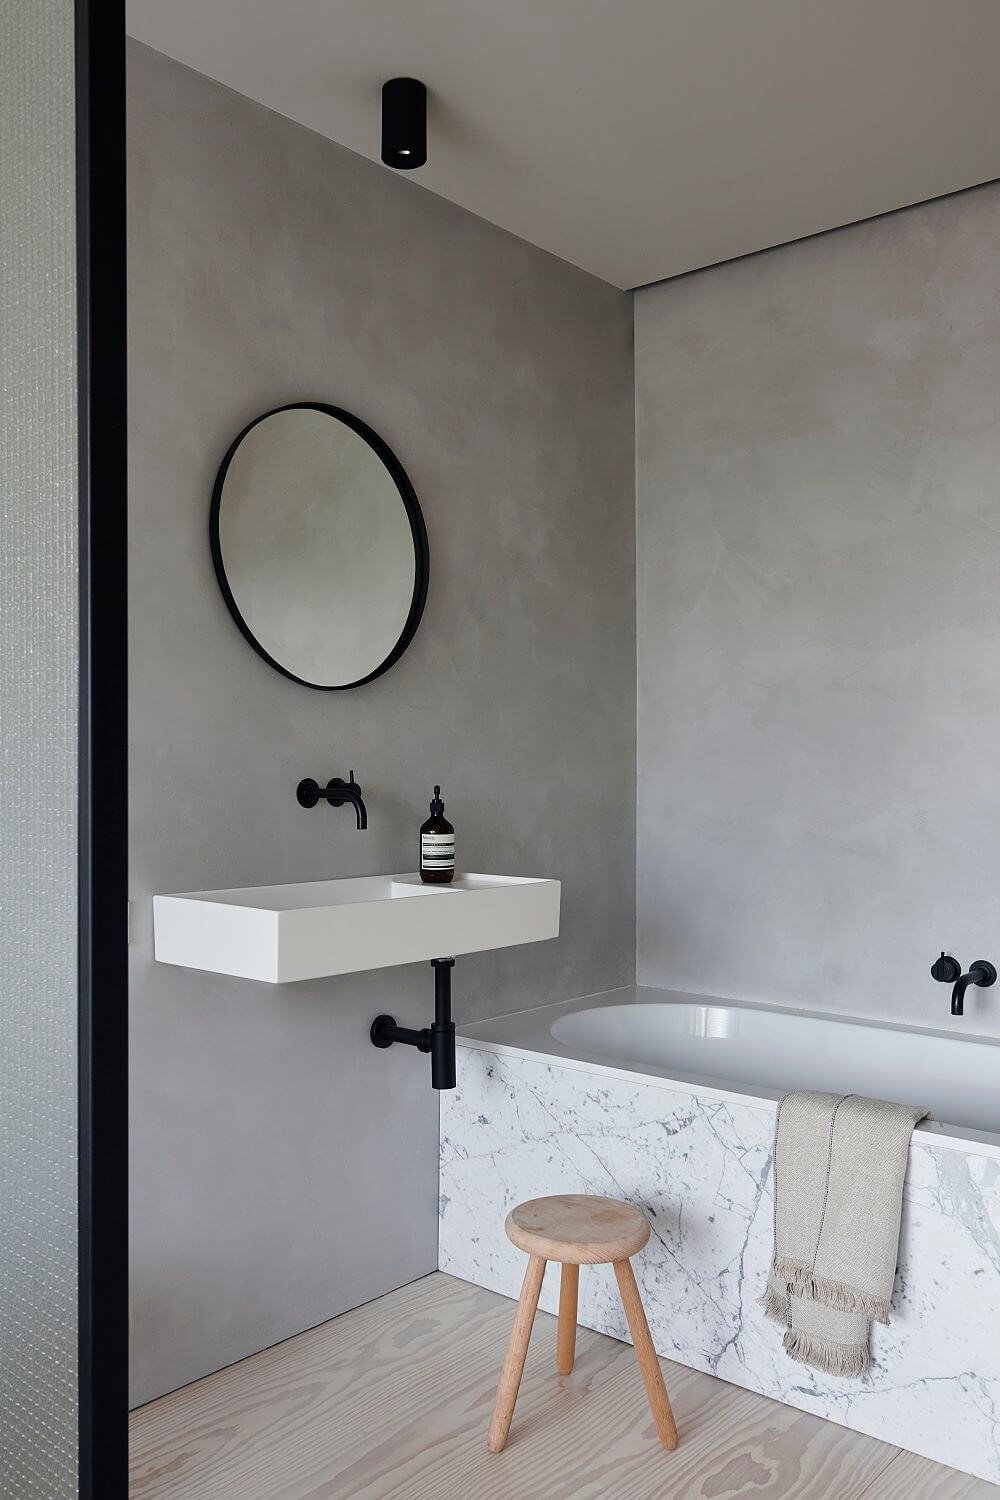 Lavabo blanco suspendido en cuarto de baño gris con grifería negra y bañera de mármol.